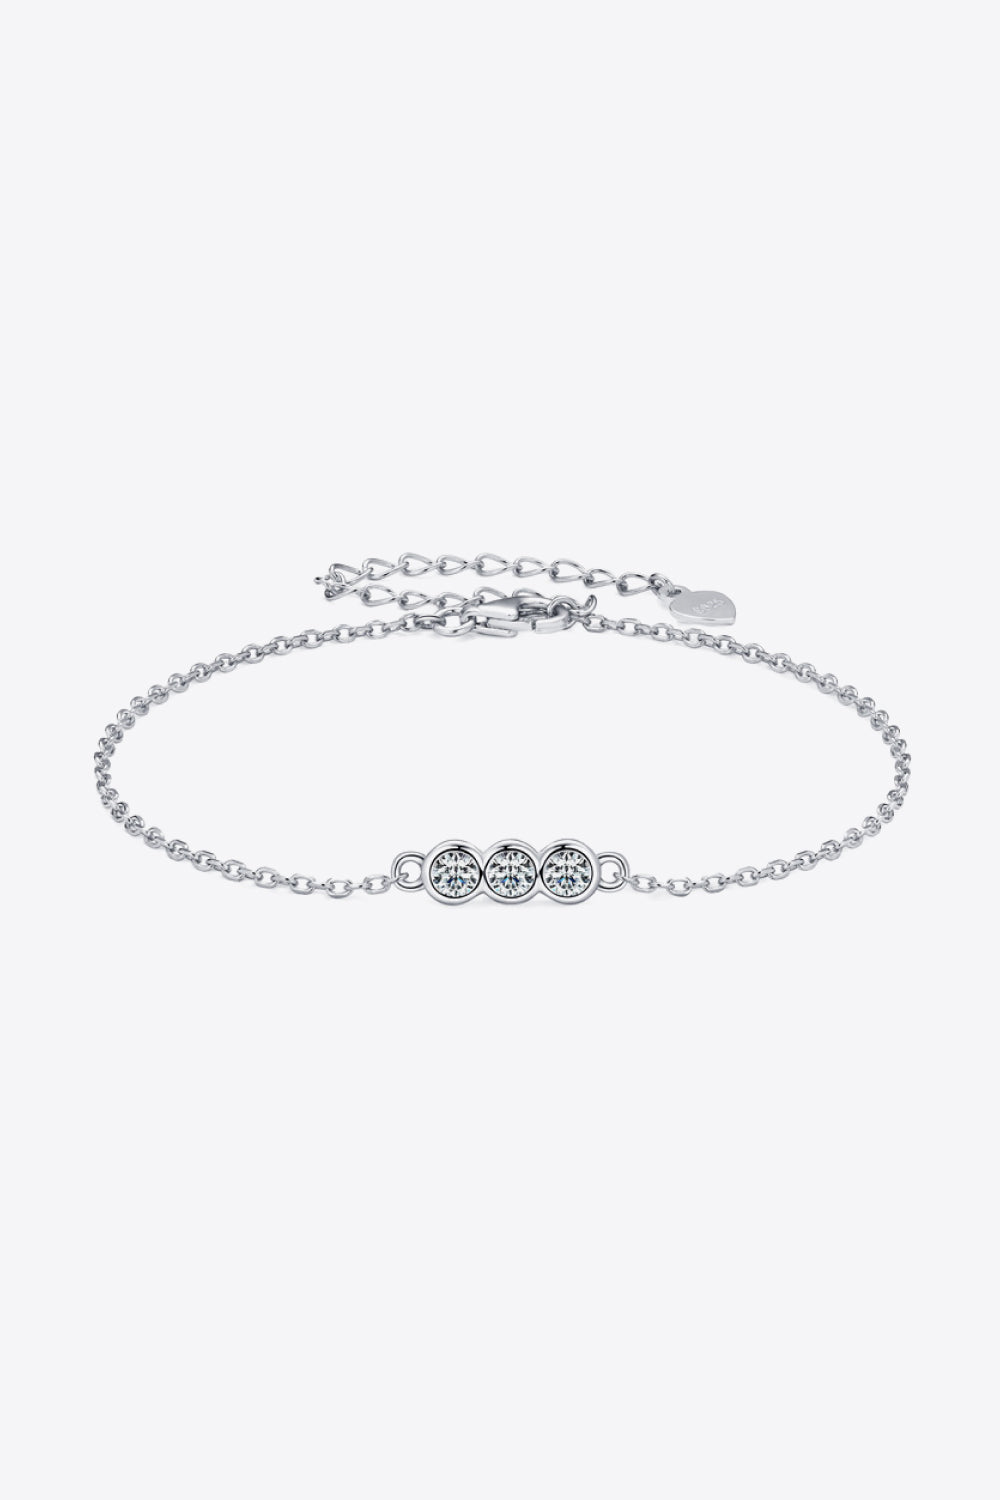 Adored Moissanite 925 Sterling Silver Bracelet - Silver / One Size - Women’s Jewelry - Bracelets - 3 - 2024